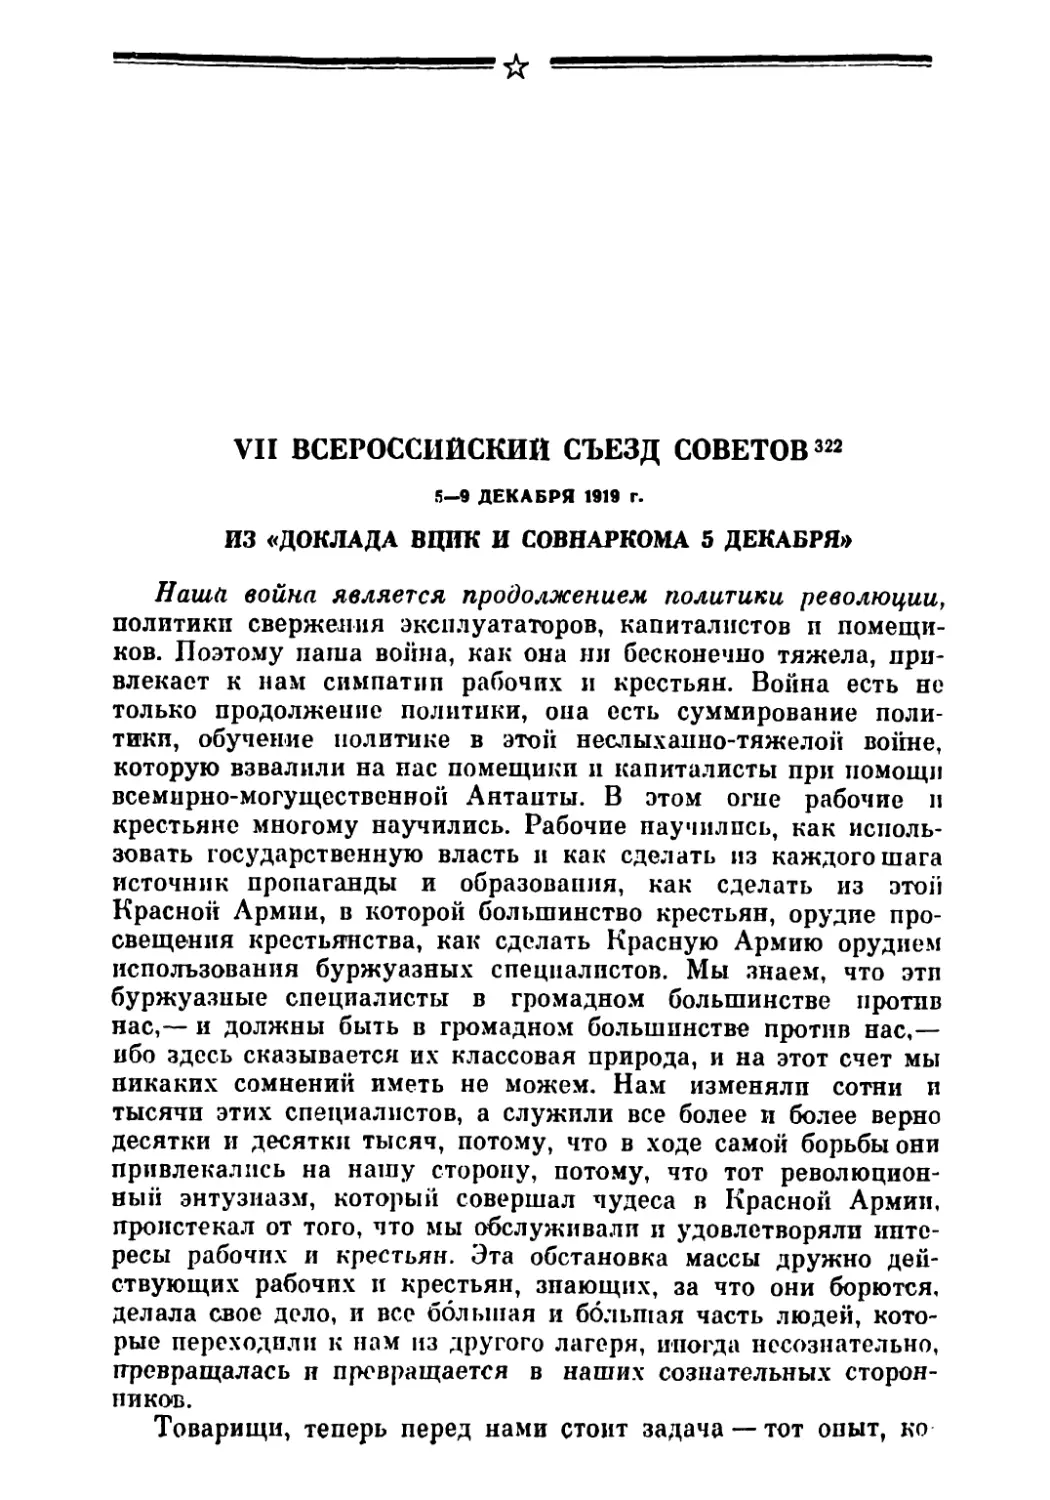 VII Всероссийский съезд Советов 5—9 декабря 1919 г.